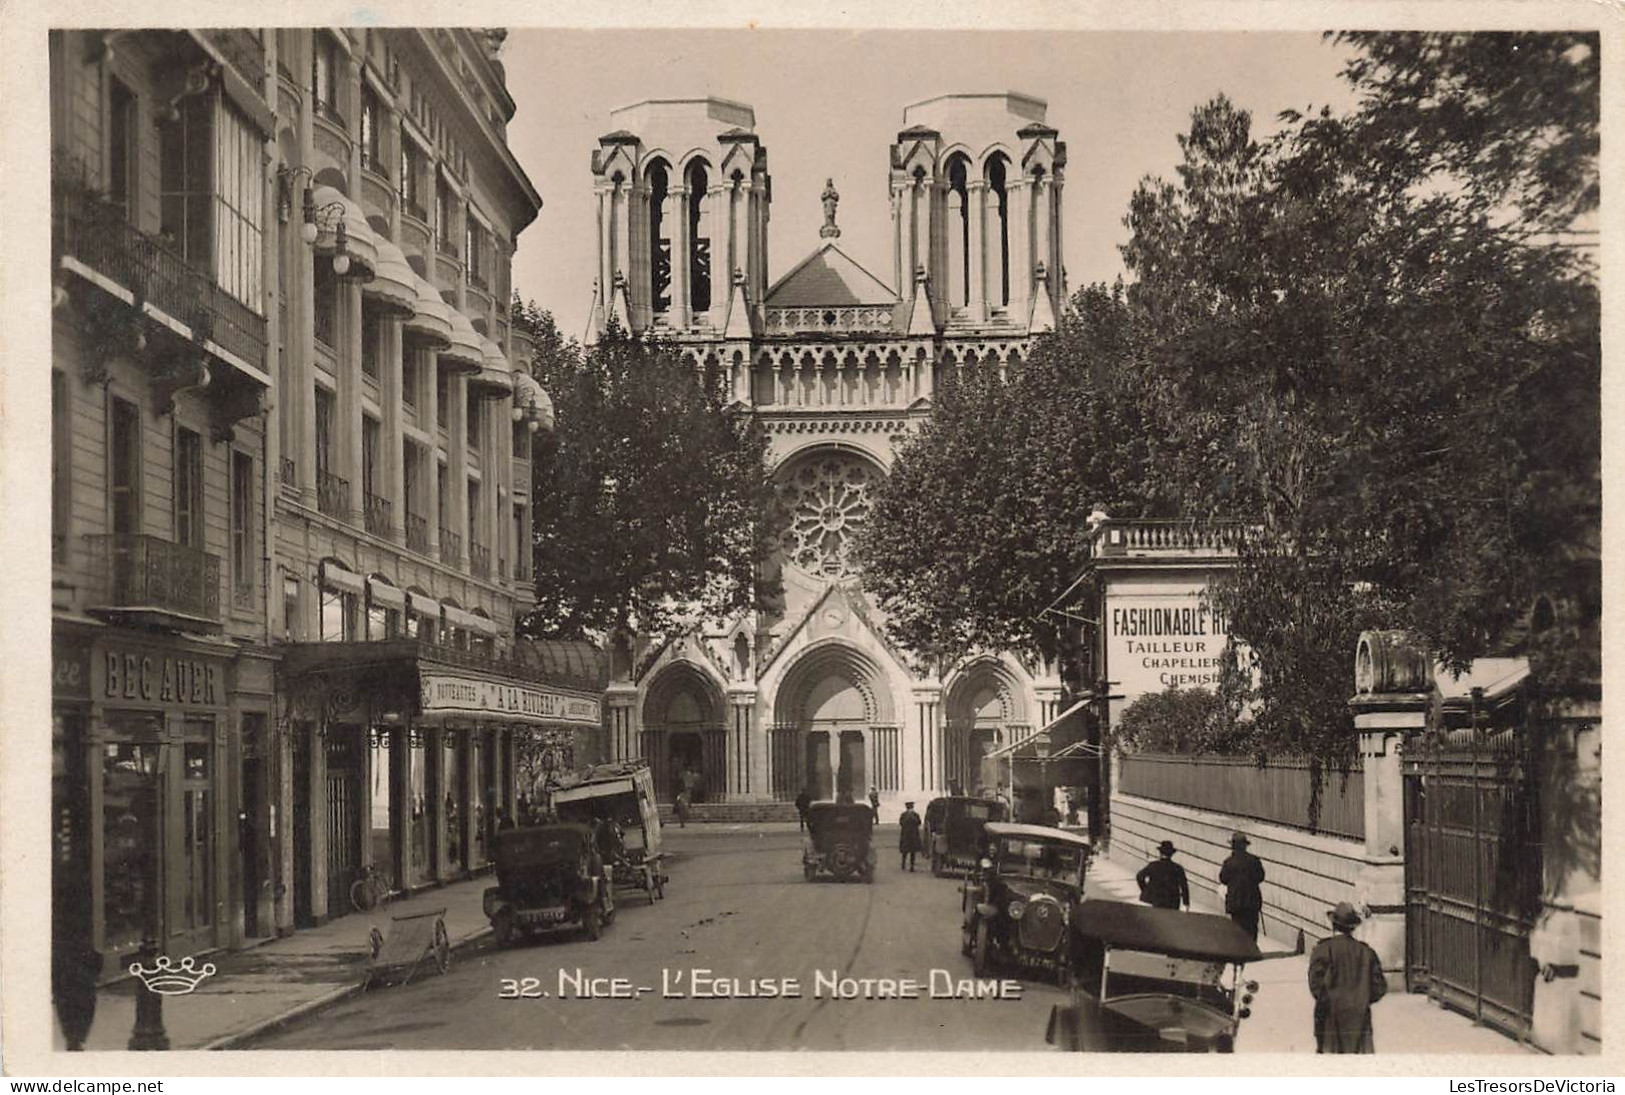 FRANCE - Nice - L'Eglise Notre Dame - Fashionable Tailleur Chapellier - Animé - Carte Postale Ancienne - Monumenti, Edifici